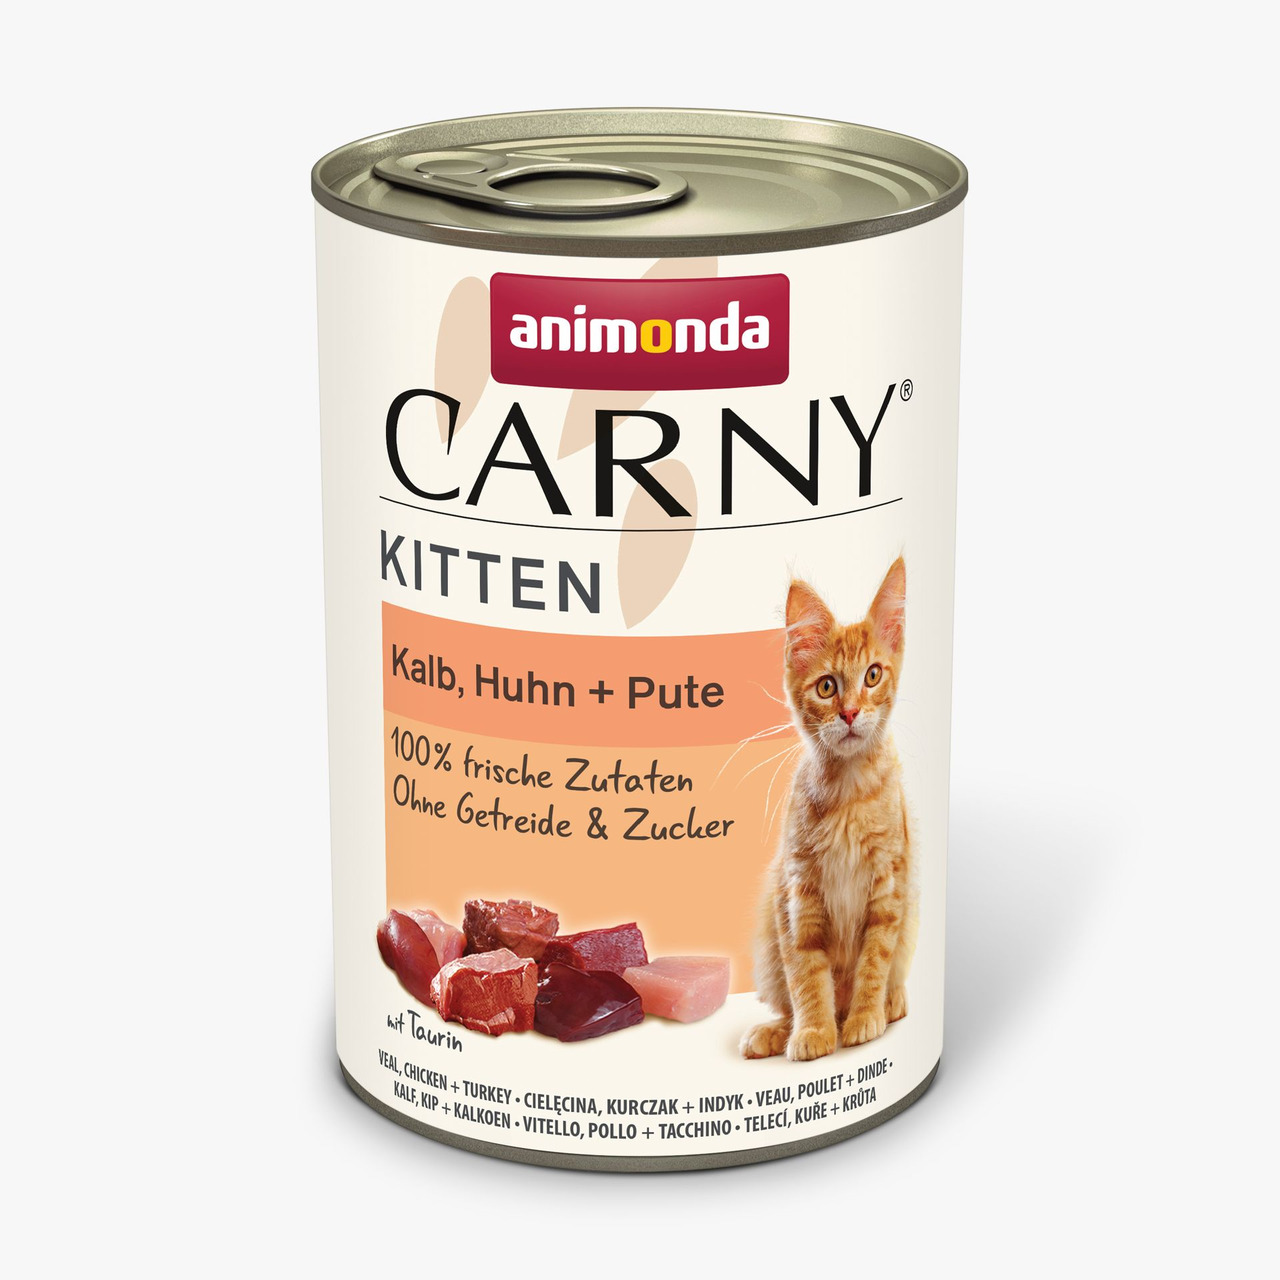 Animonda Carny Kitten Kalb, Huhn + Pute Katzen Nassfutter 400 g